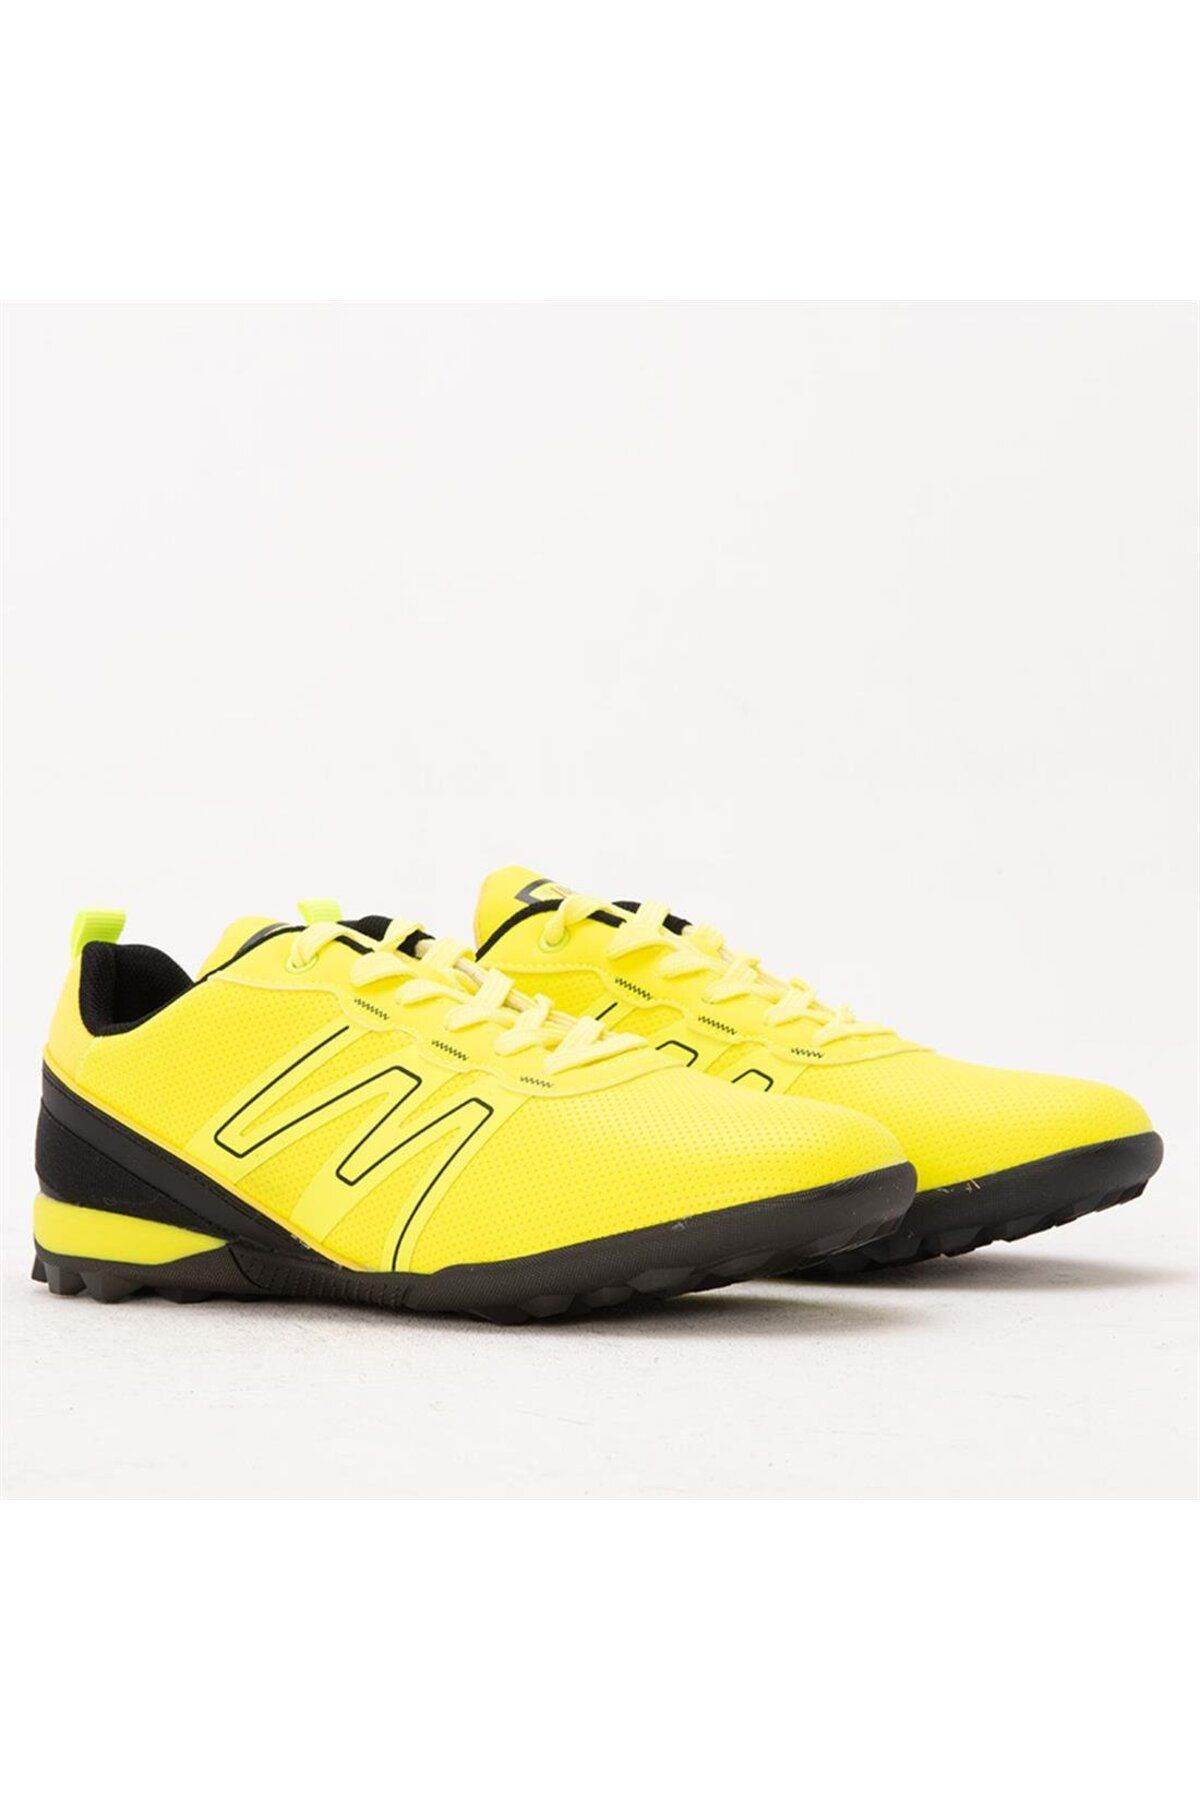 Jump 29112 Sarı Yellow Desenli Baskılı Siya Detay Neon Halısaha Futbol Ayakkabısı